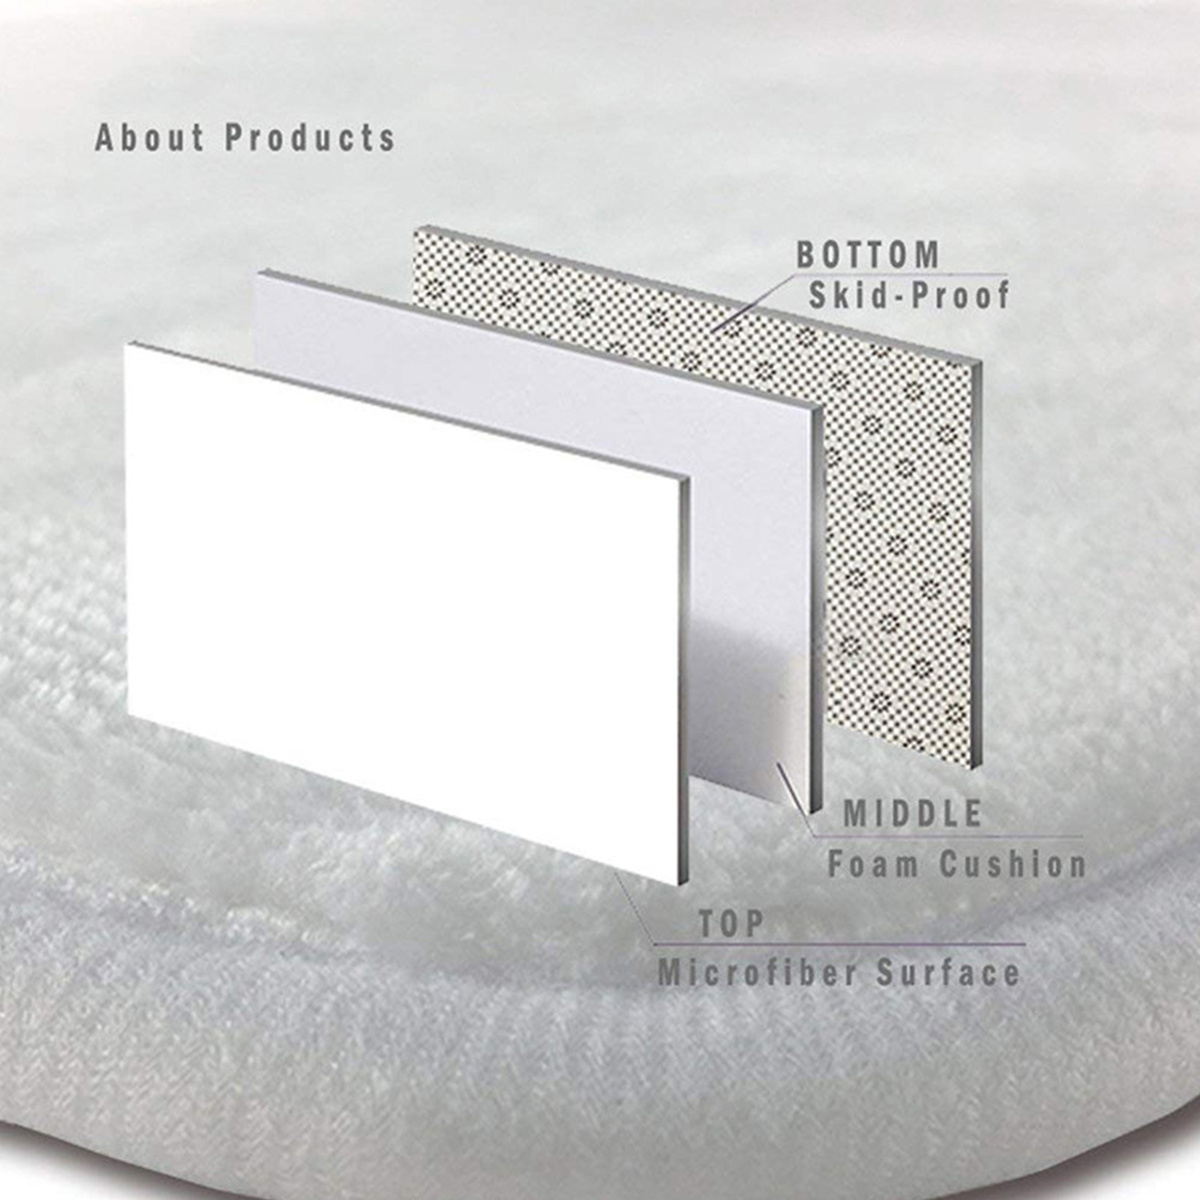 Les produits   Tapis de sol, paillasson - Tapis absorbant  antidérapante gris 40x60 cm